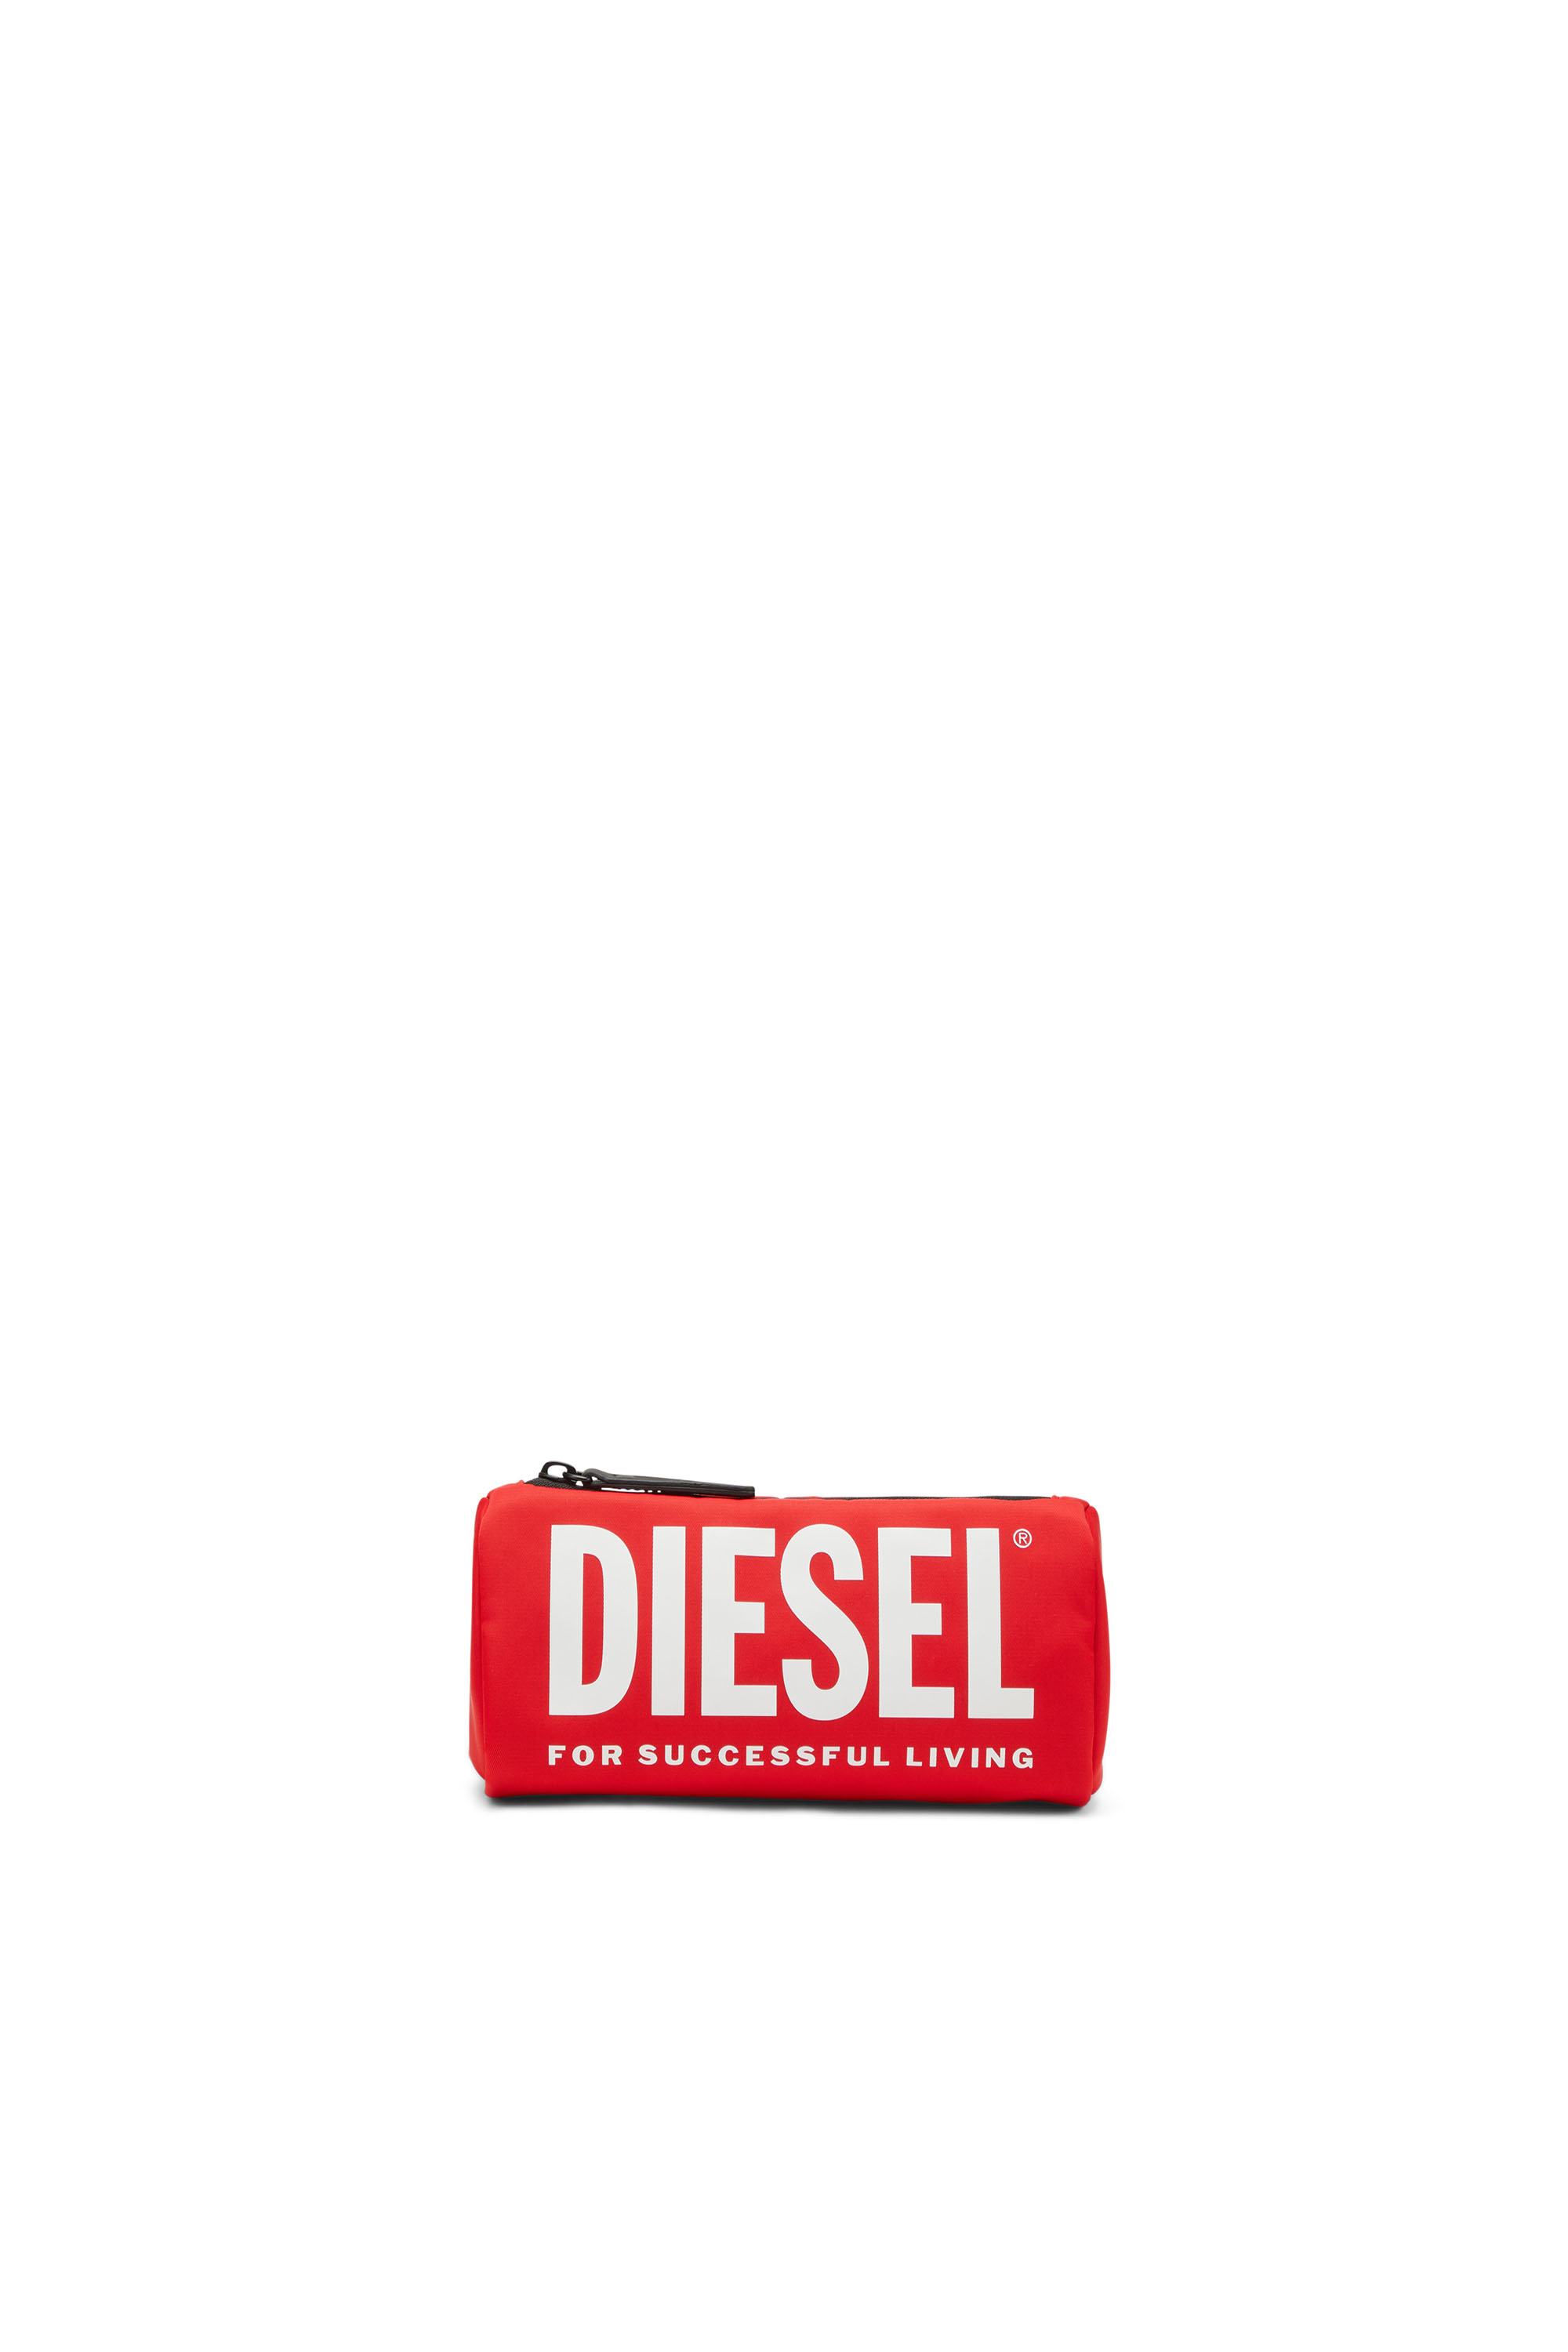 Diesel - WCASELOGO, Rot - Image 1